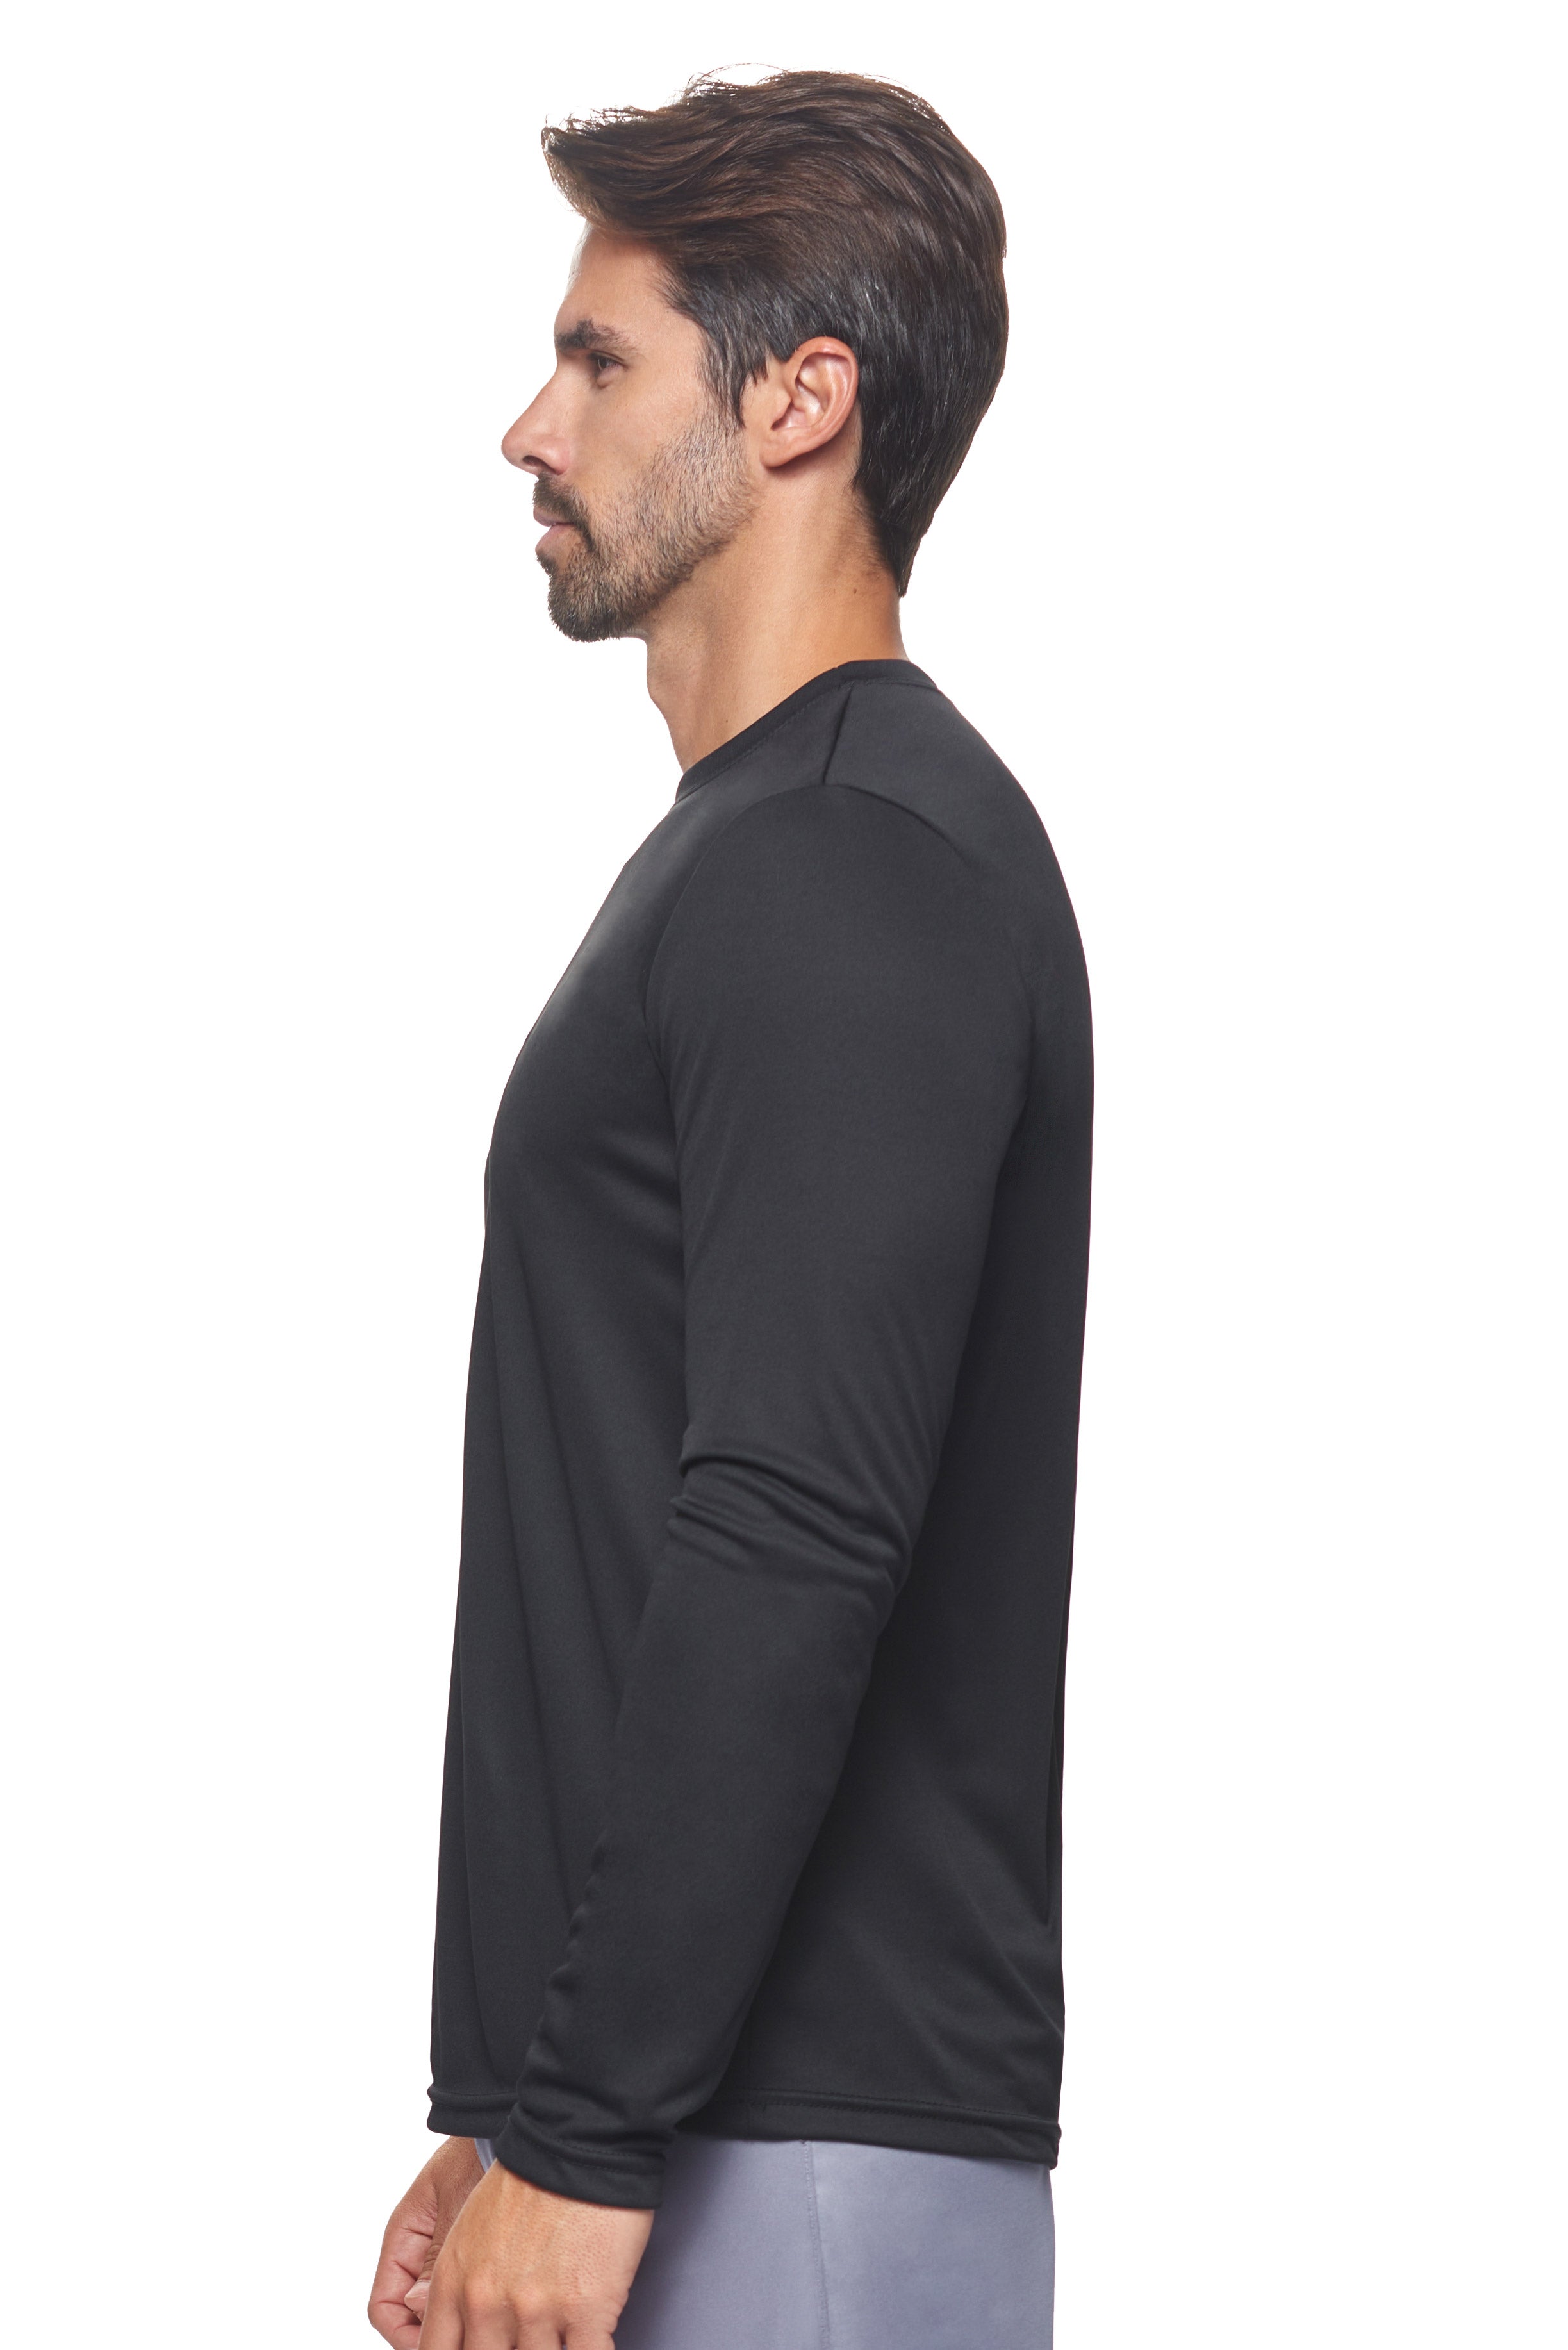 All Brand - Long Sleeve T-Shirt for Men